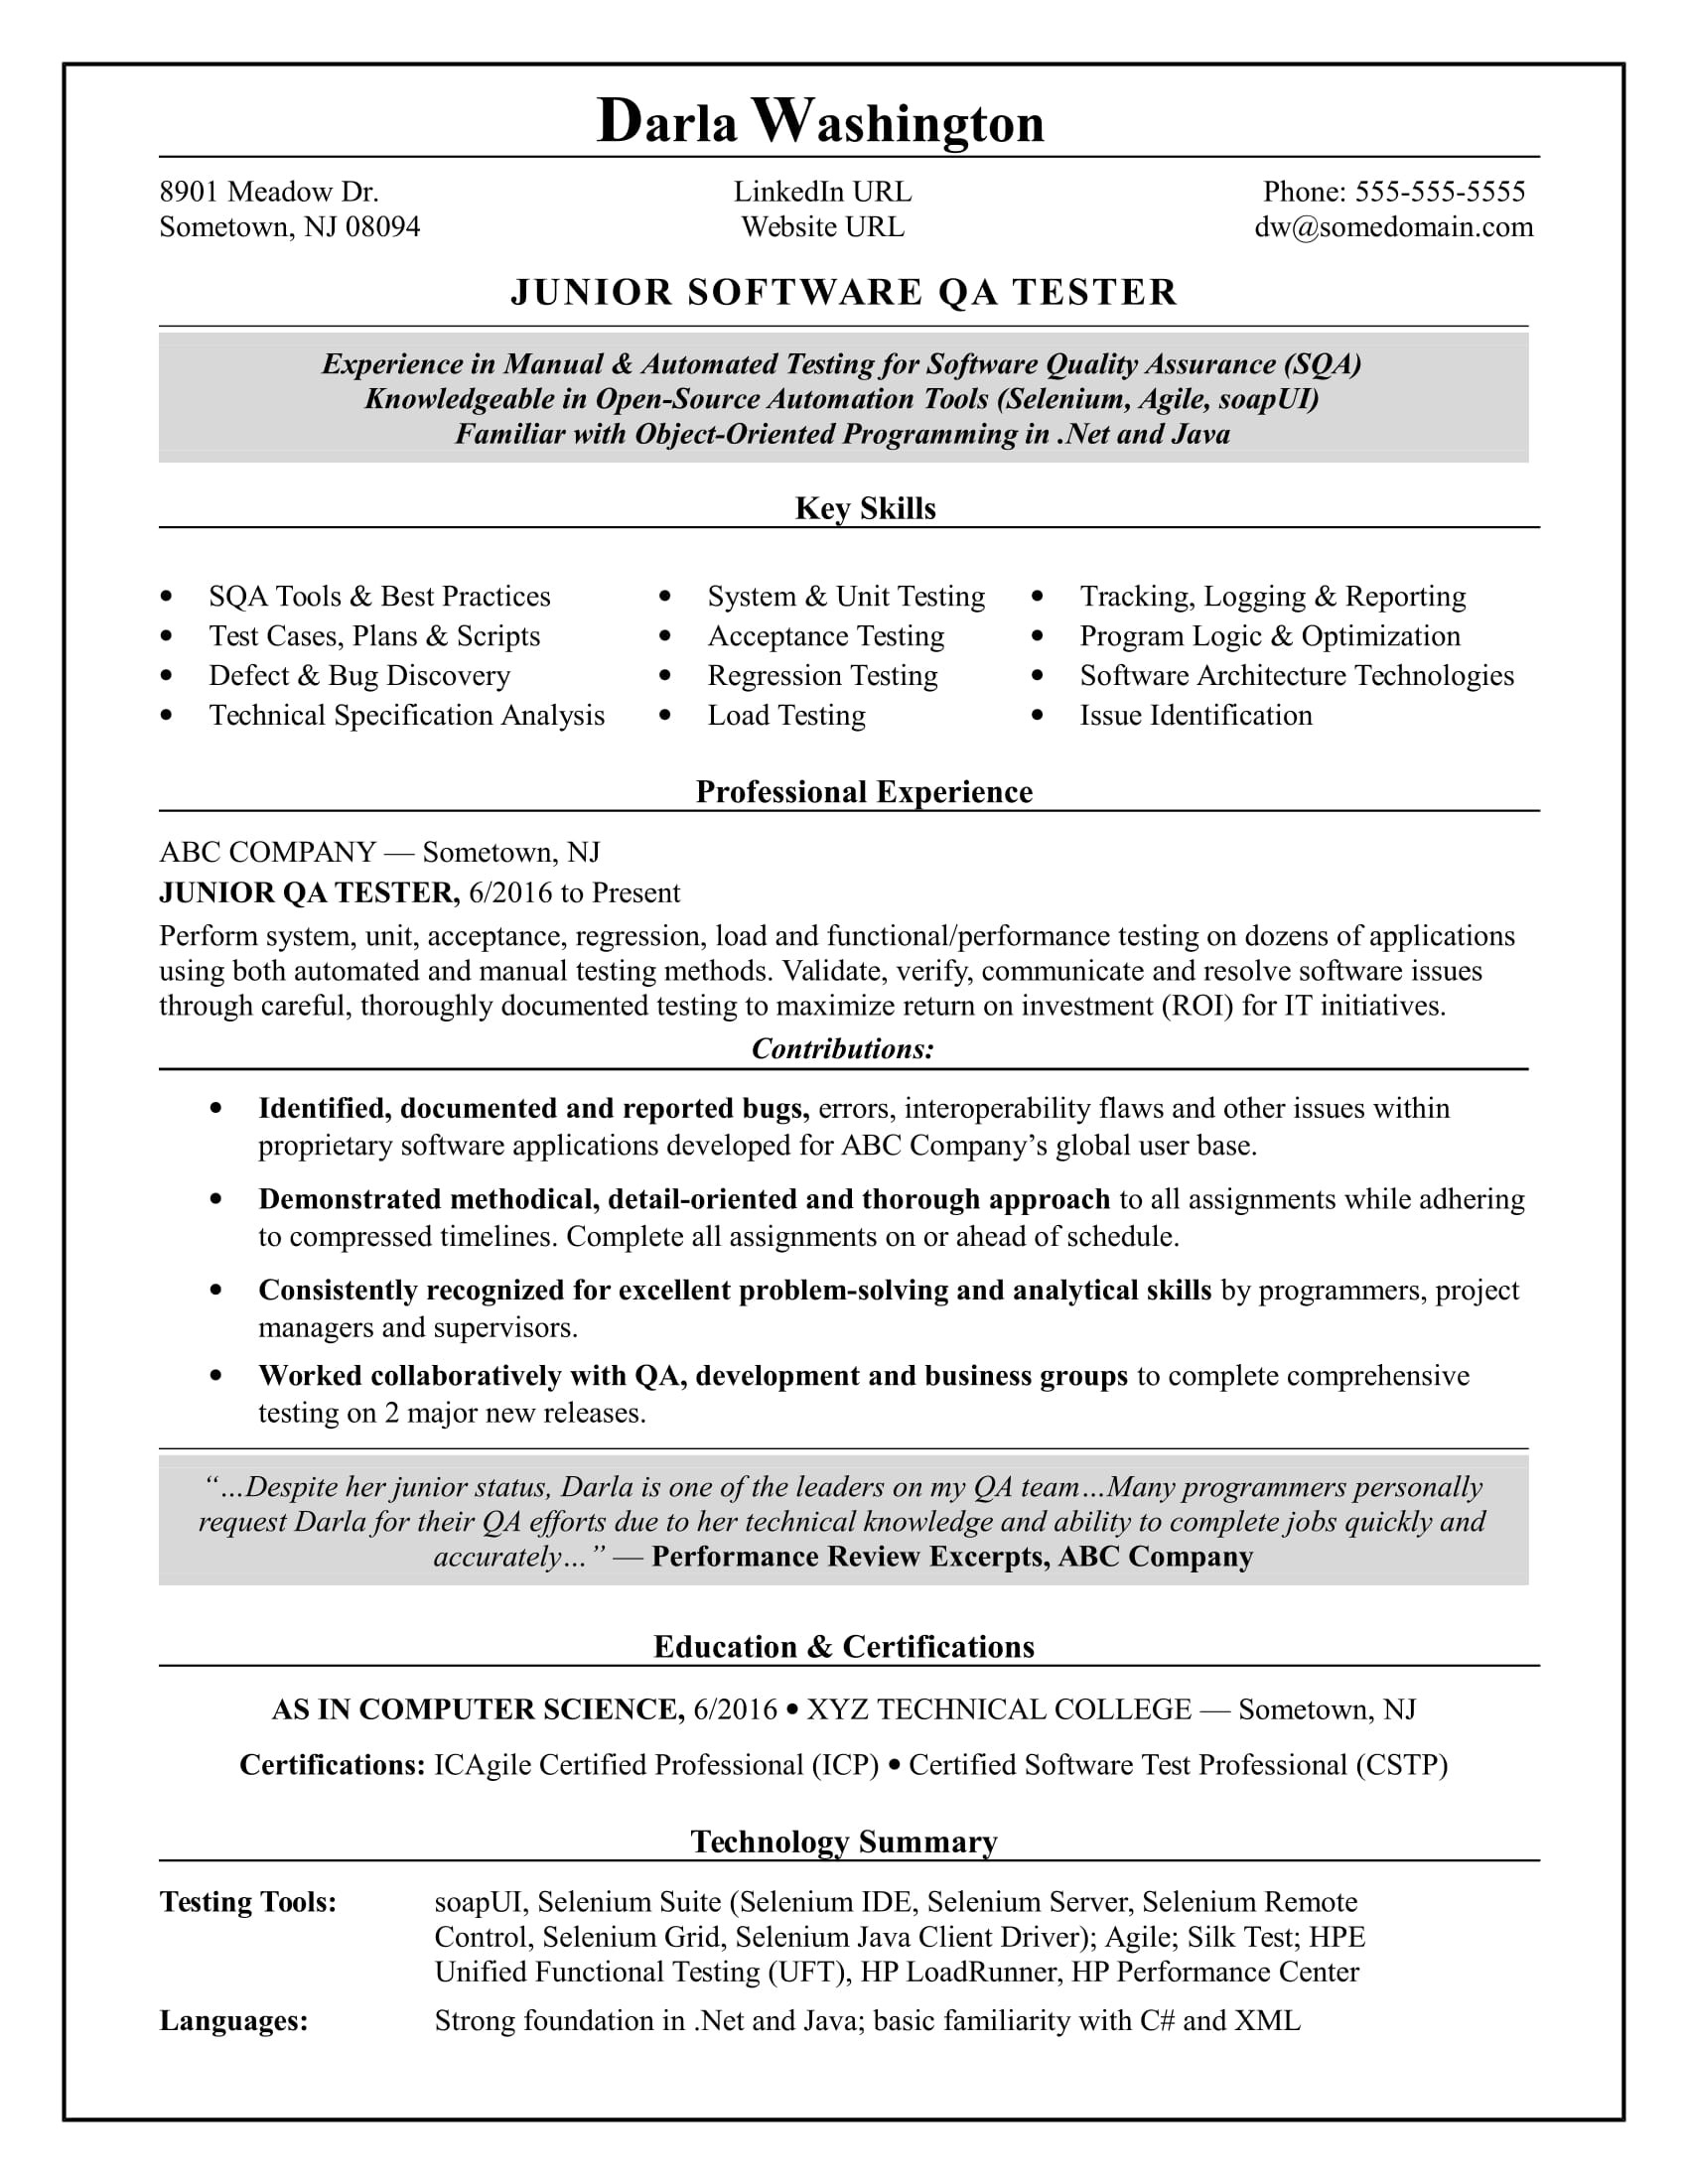 Selenium Testing Resume Sample for Freshers Entry-level software Tester Resume Monster.com